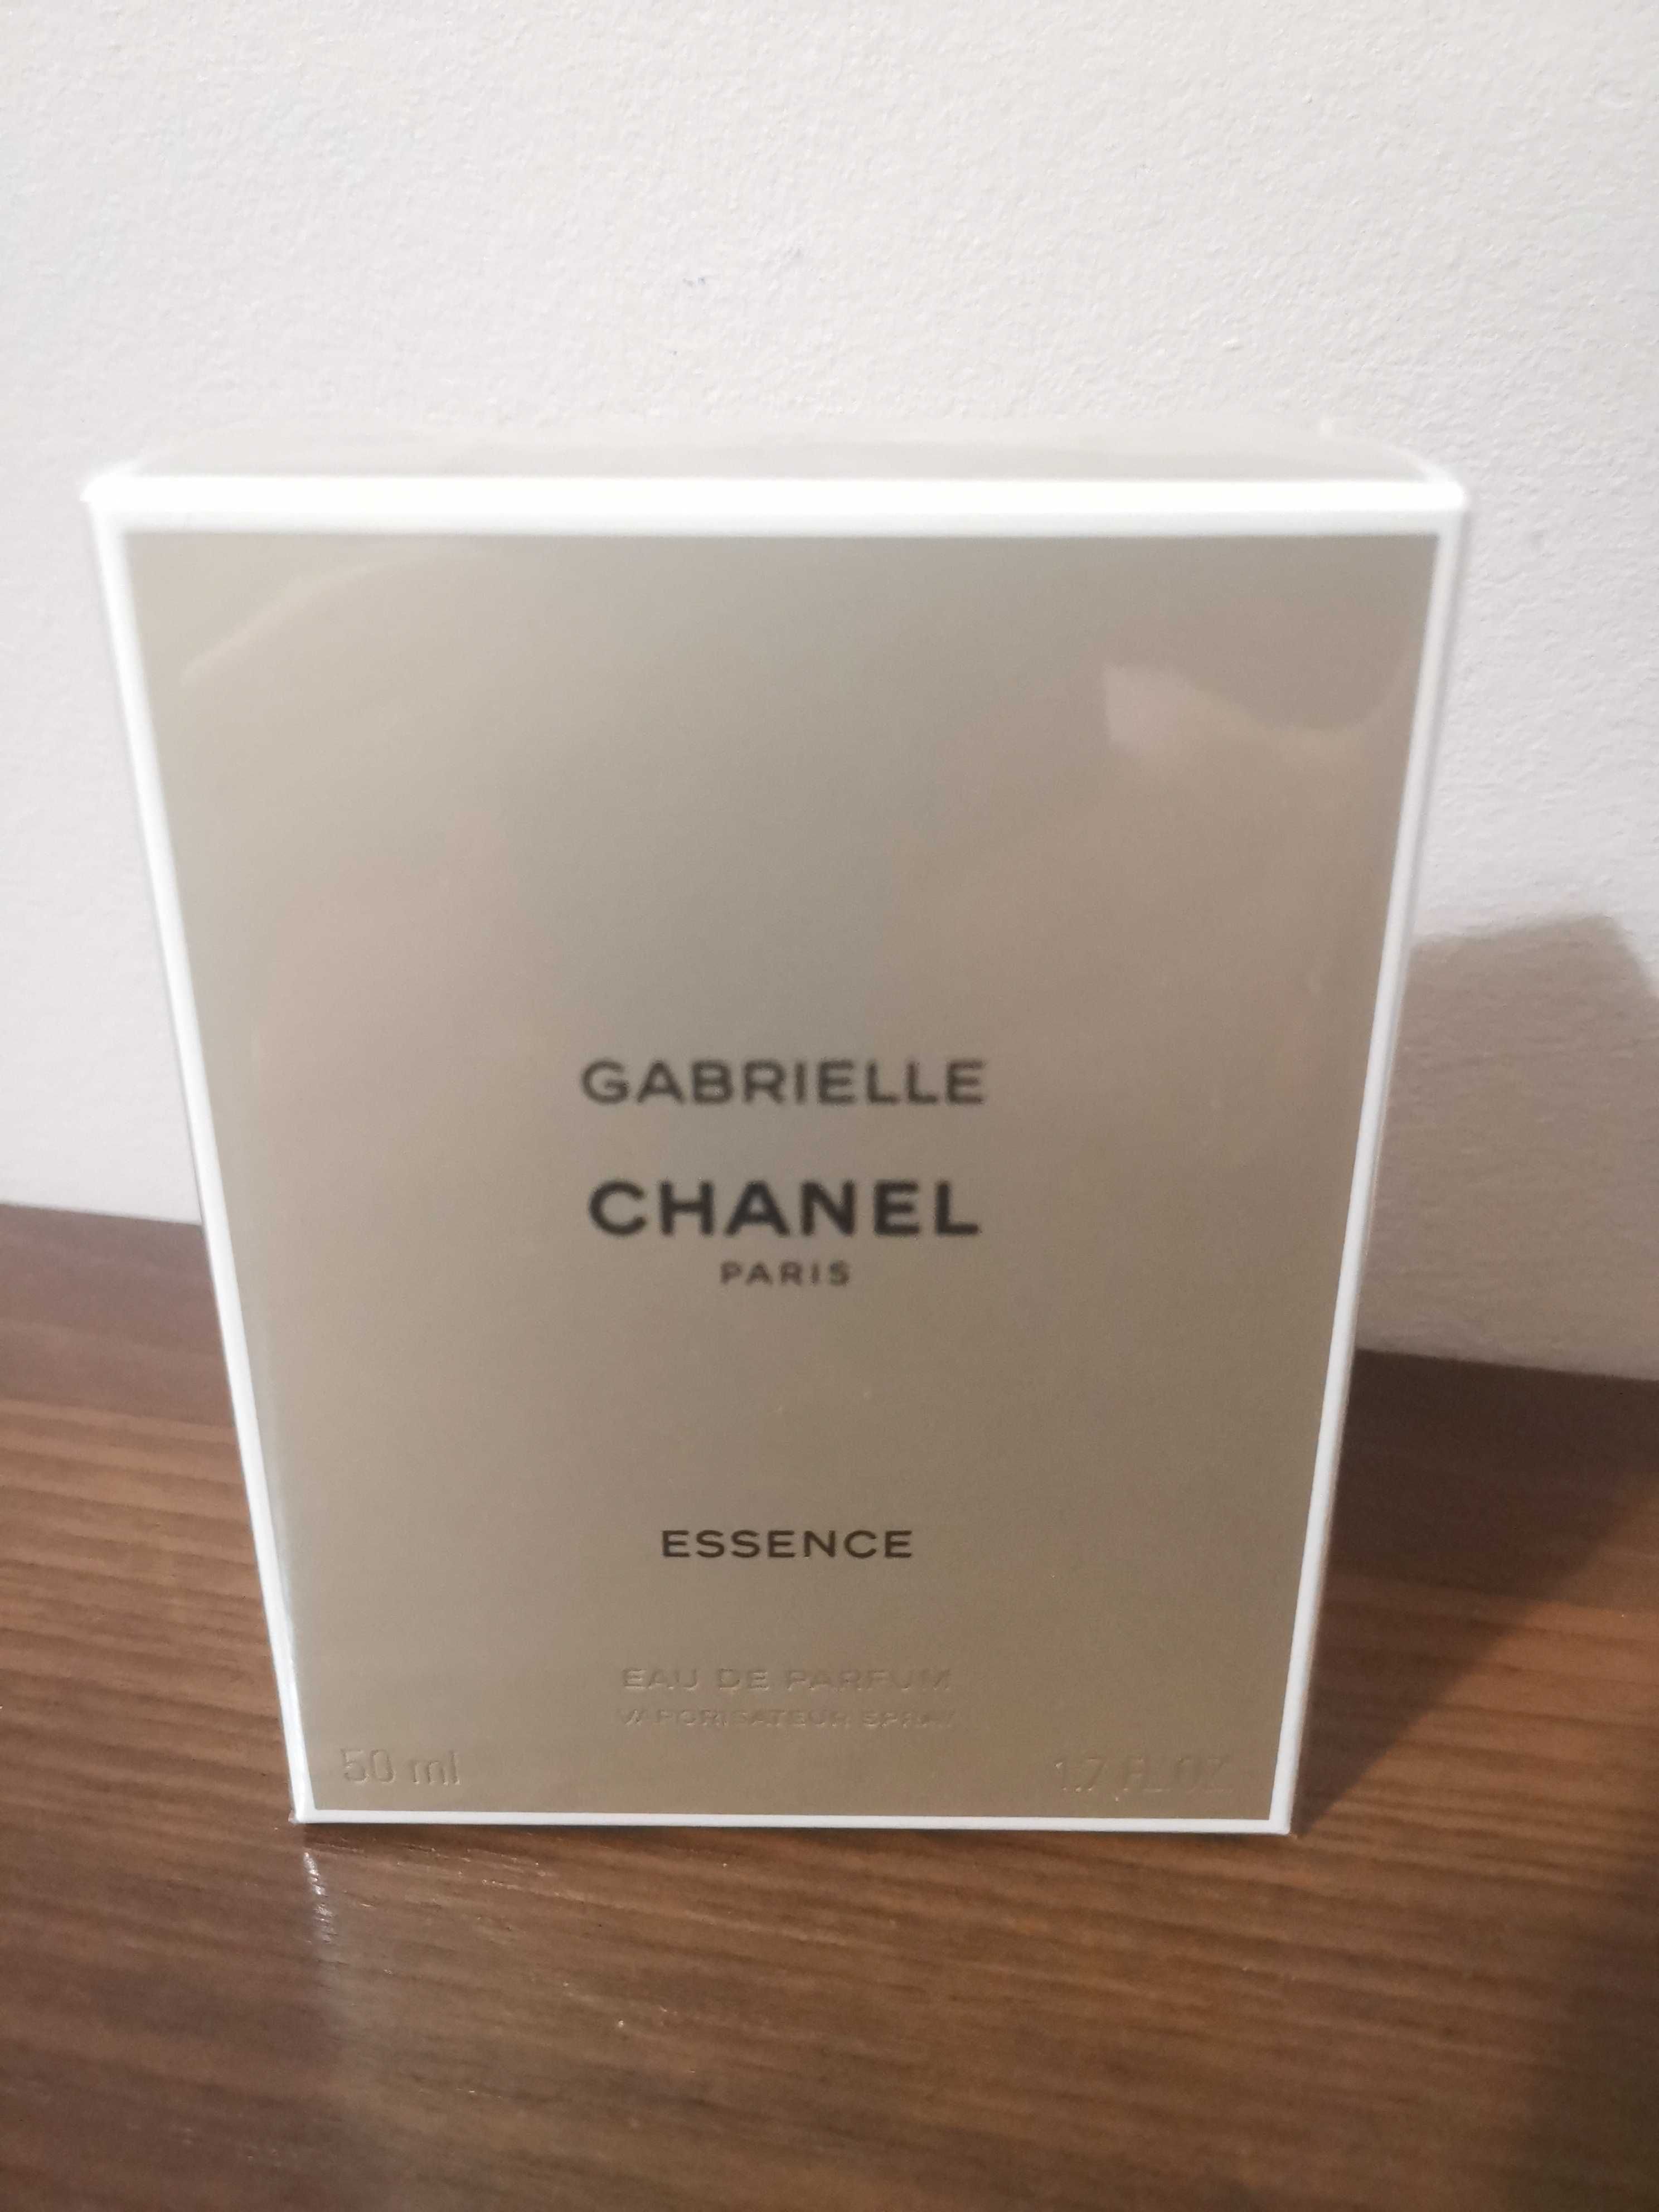 Gabrielle chanel Paris Essence